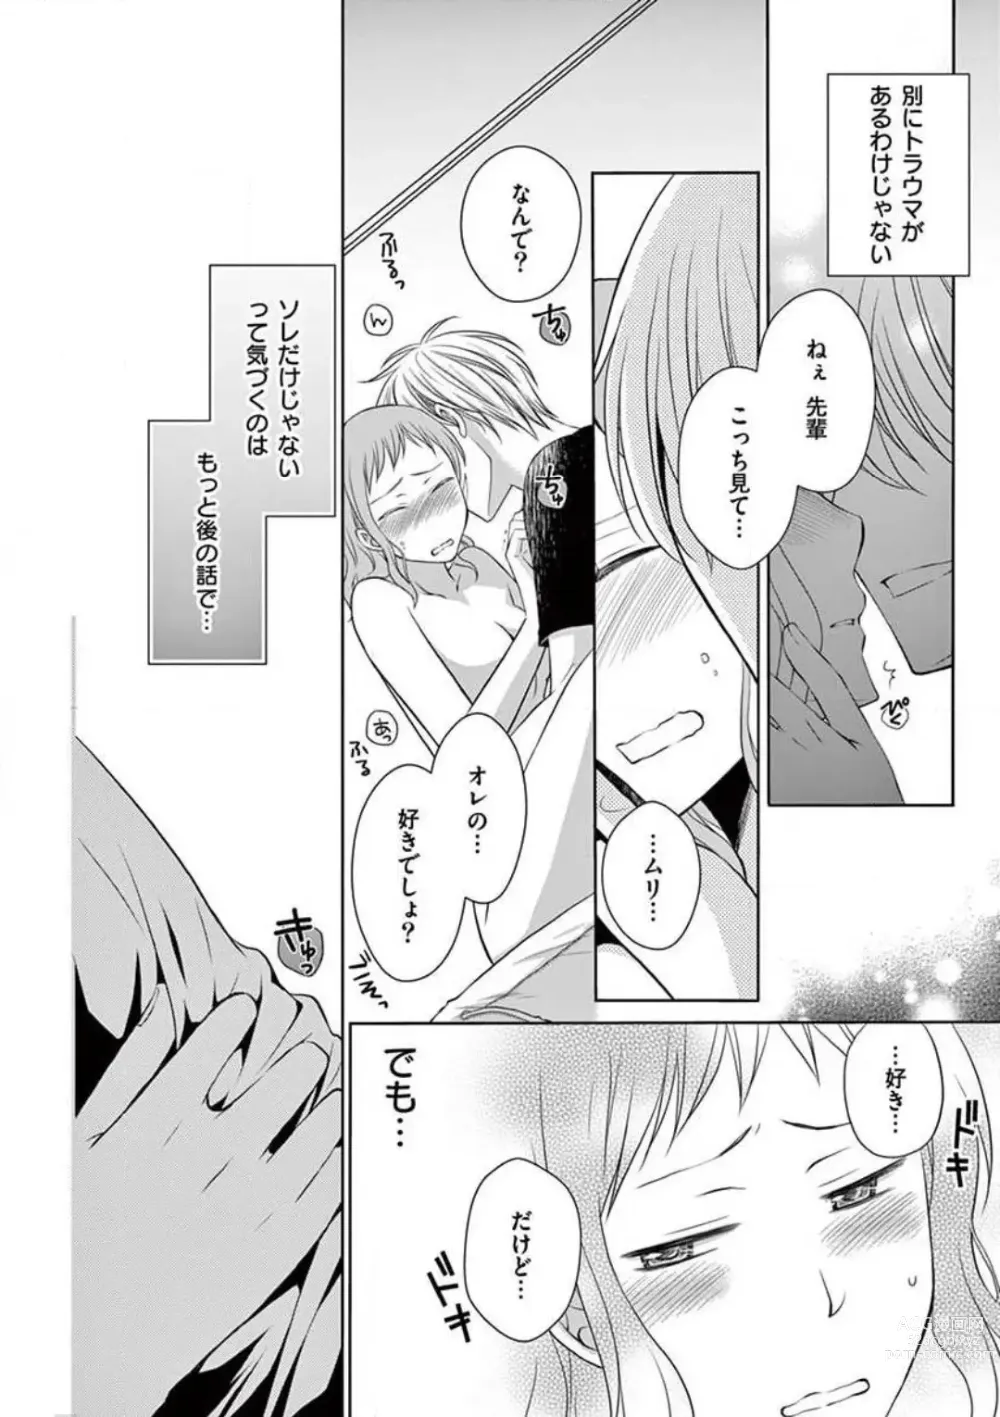 Page 2 of manga Senpai Gentei no Kedamonodesukara 〜 Kanshō-yō Ikemen no Hotobashiru Aijō〜 1-4